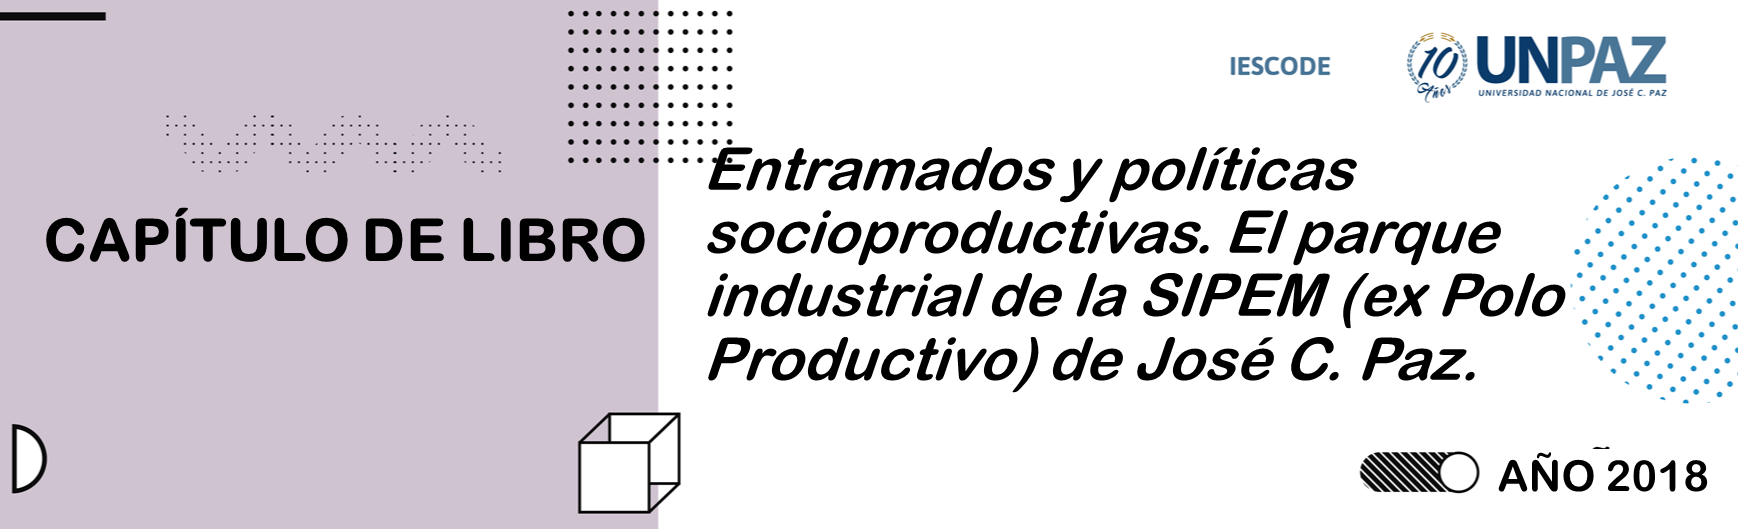 Entramados y políticas socioproductivas. El parque industrial de la SIPEM (ex Polo Productivo) de José C. Paz